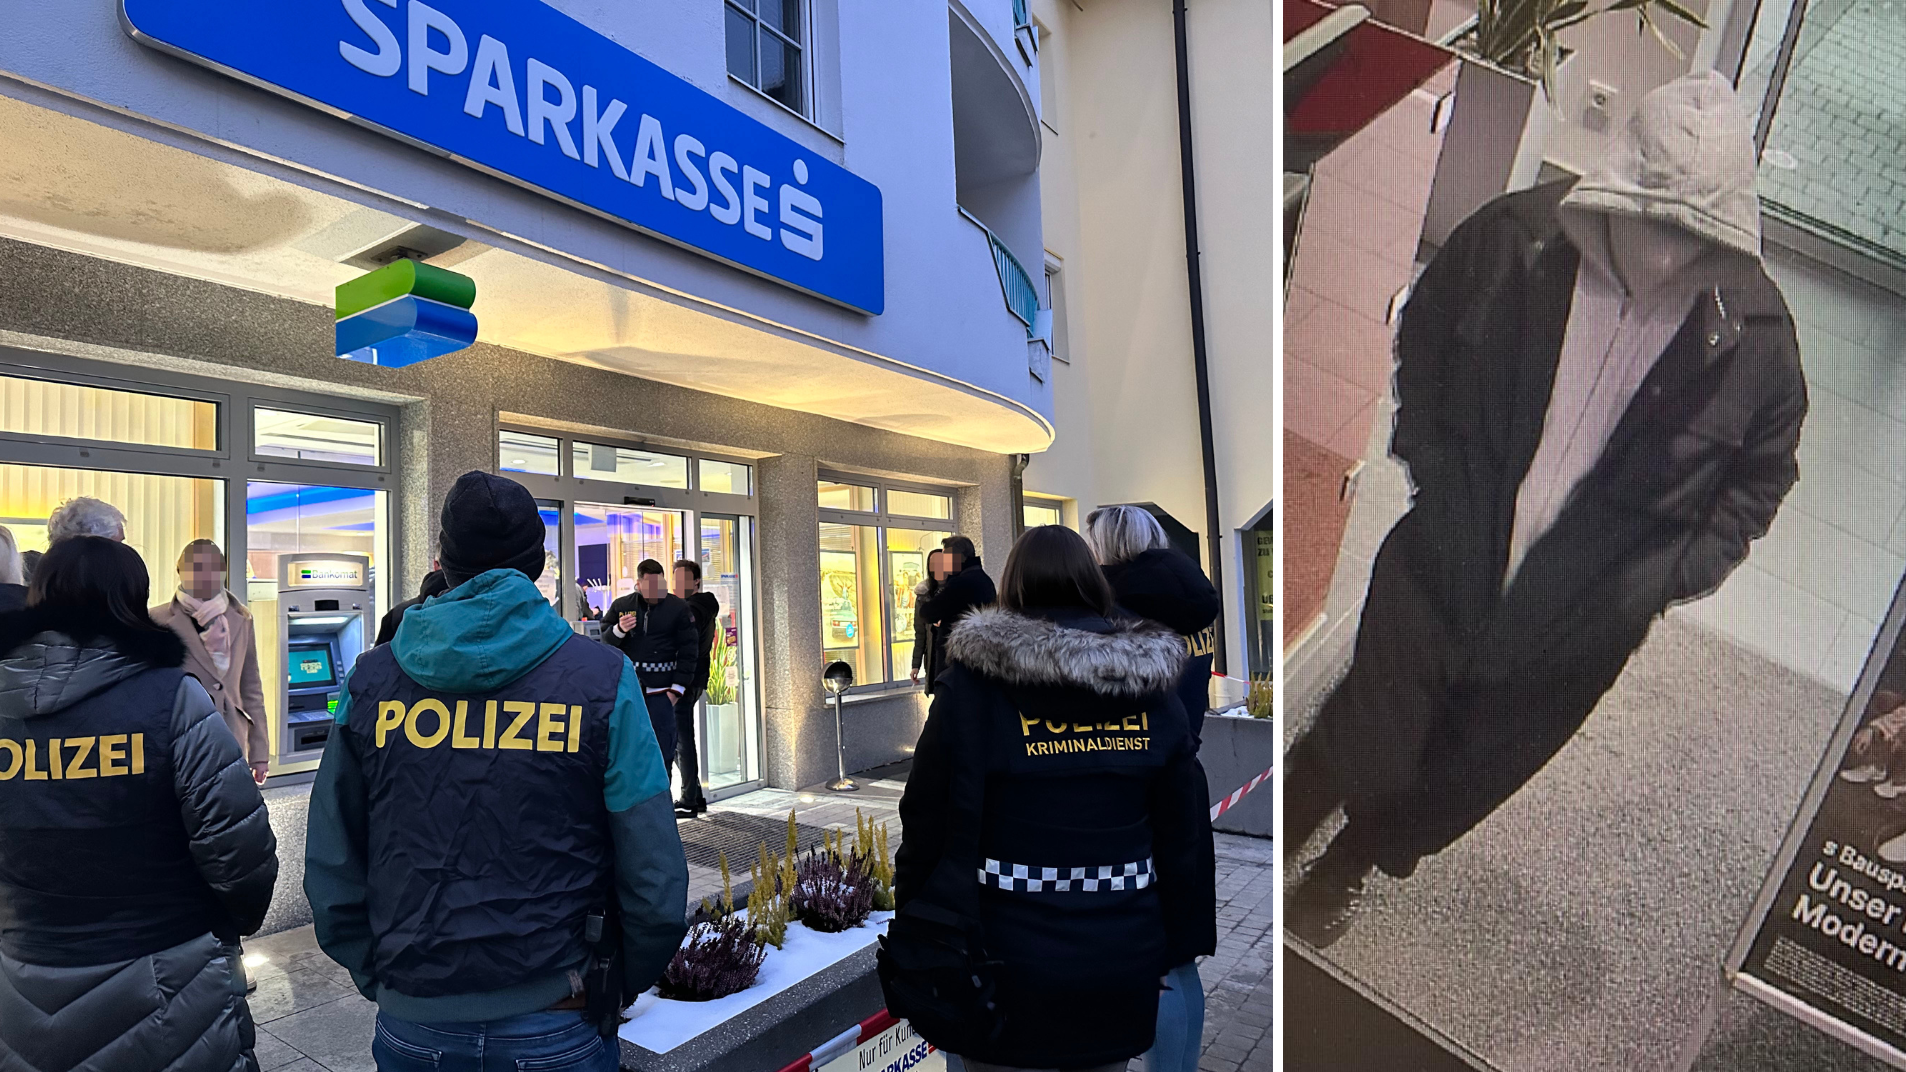 Gegen 15.45 Uhr kam es am Donnerstag in Kufstein zum Überfall. Die Polizei veröffentlichte ein Fahndungsfoto vom Täter. (Bild: zoom.tirol, Polizei)